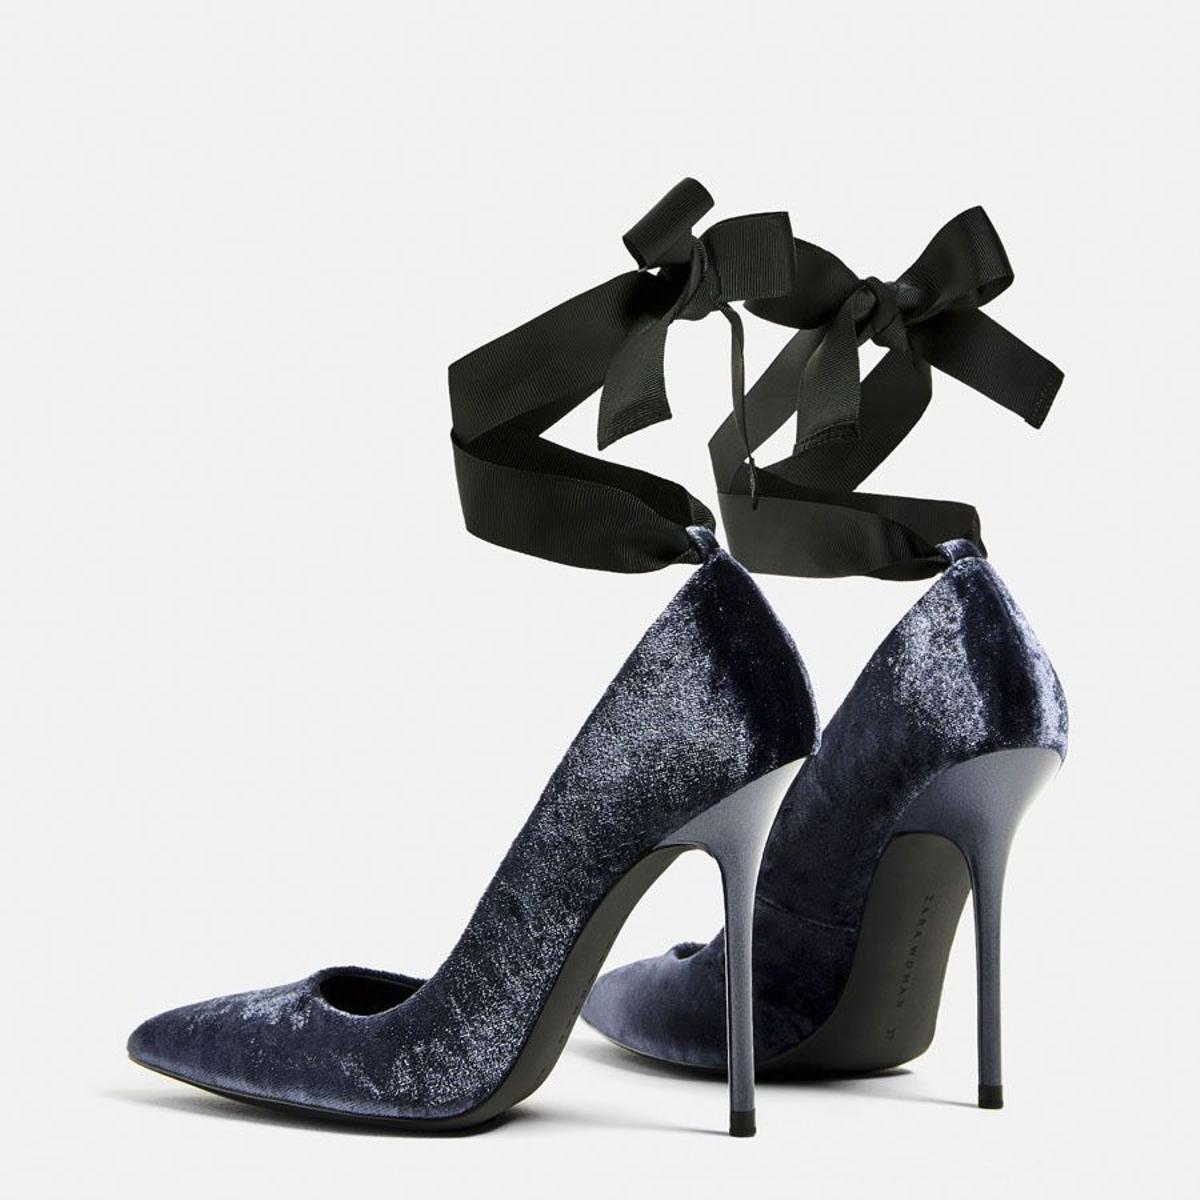 Rebajas 2017- los zapatos de Zara que vas a querer: tacón de terciopelo con lazo